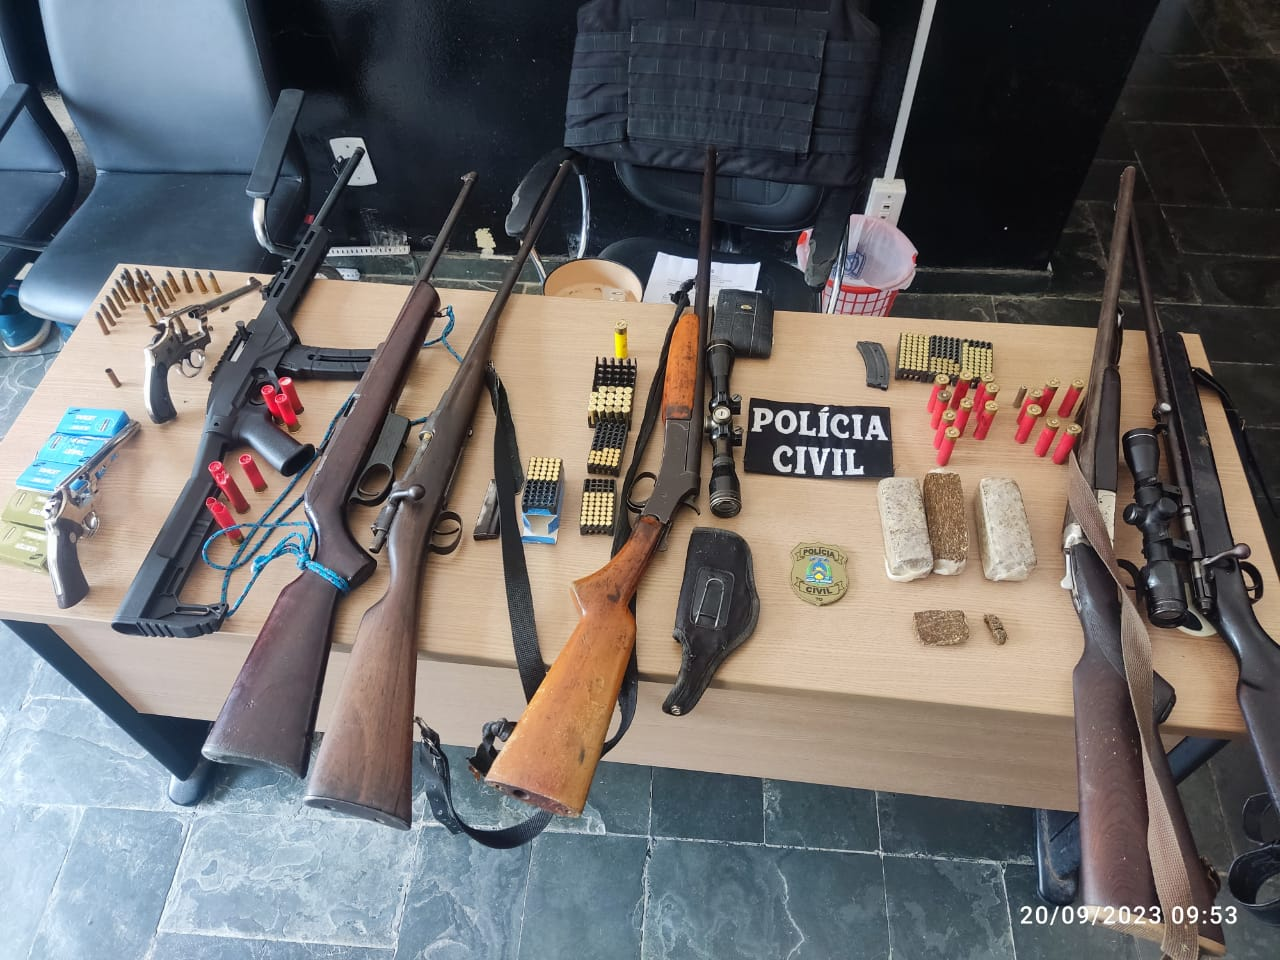 Operação Hórus: Polícia Civil apreende armas, munições e drogas em Arraias (TO)